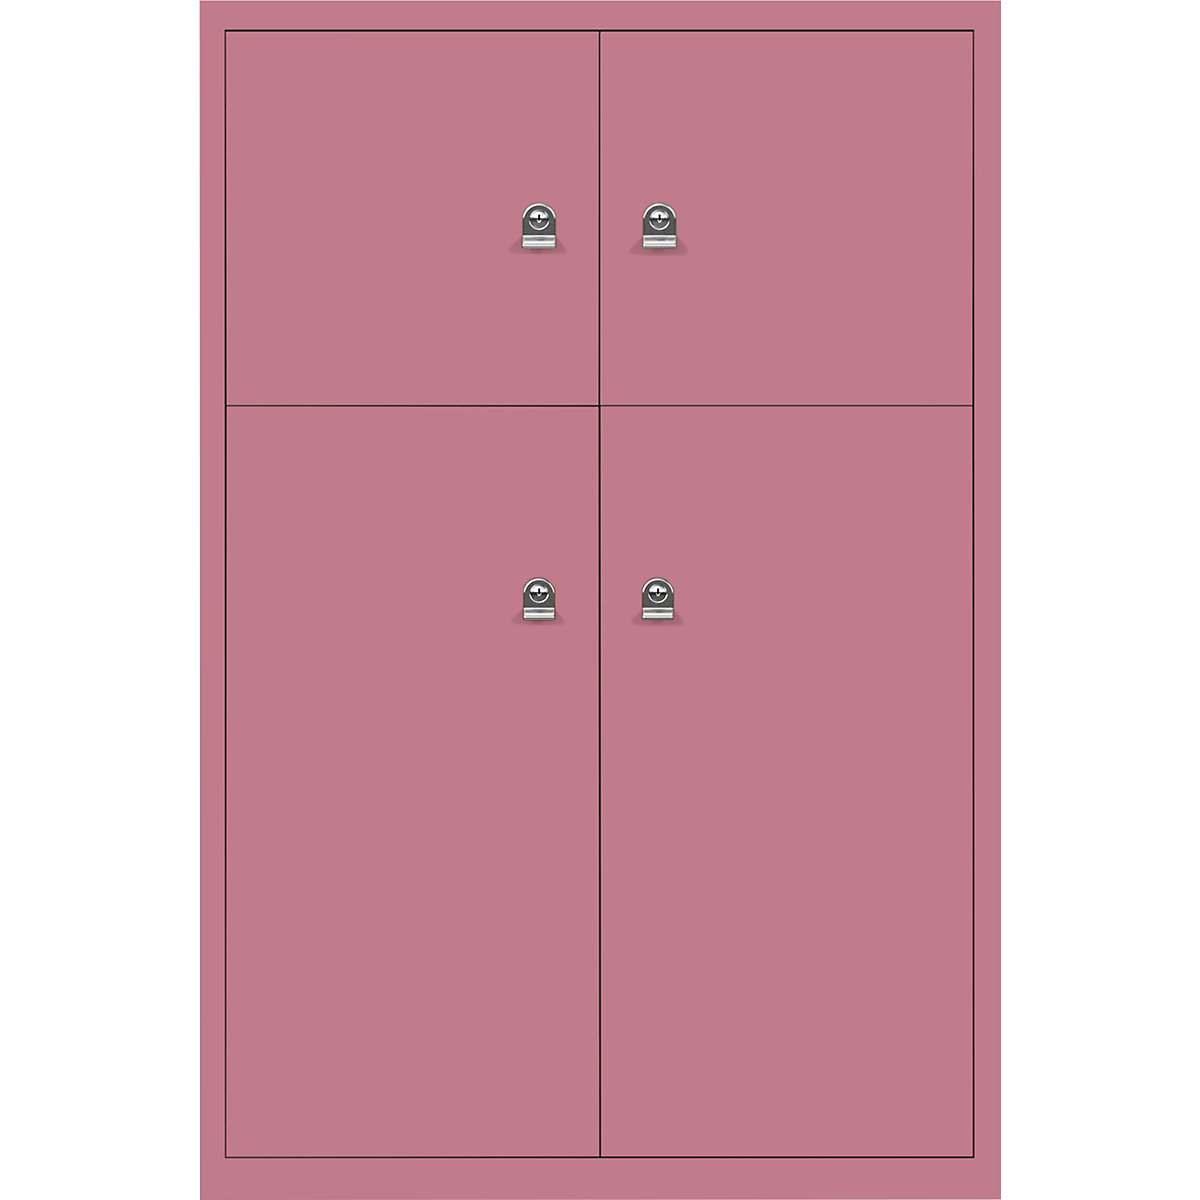 BISLEY LateralFile™ Lodge, mit 4 Schließfächern, Höhe 2 x 375 mm, 2 x 755 mm, pink